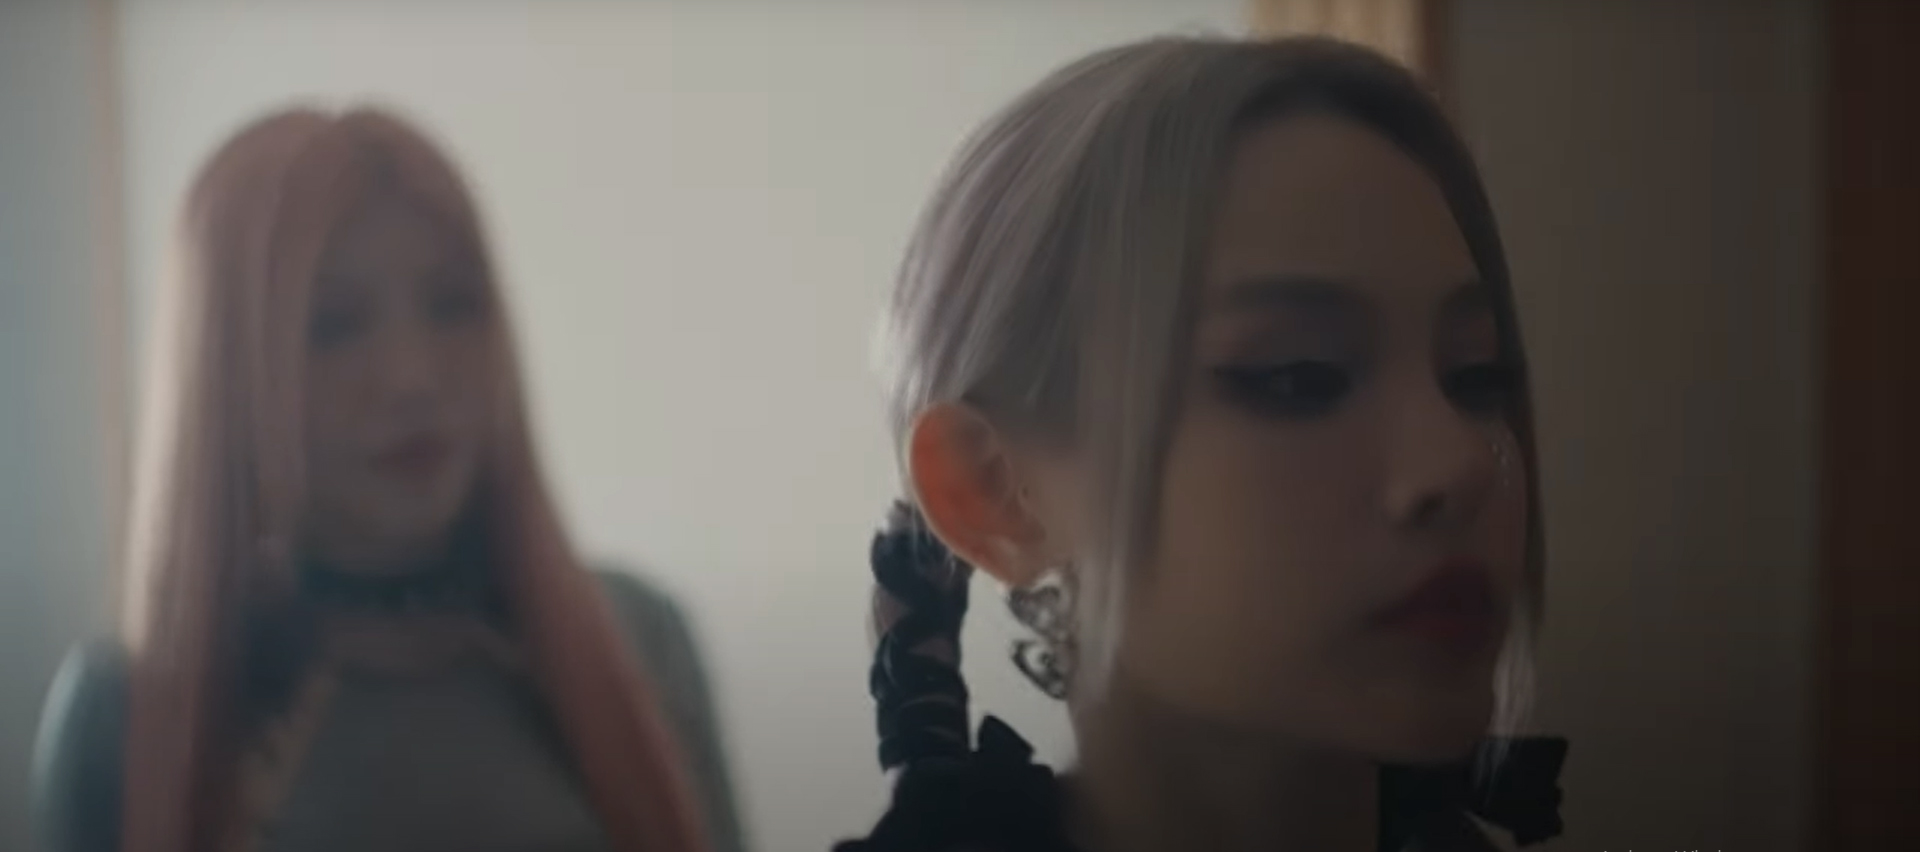 LUNAS gây sốt với Teaser MV Moonlight vọn vẻn 20 giây - ảnh 4